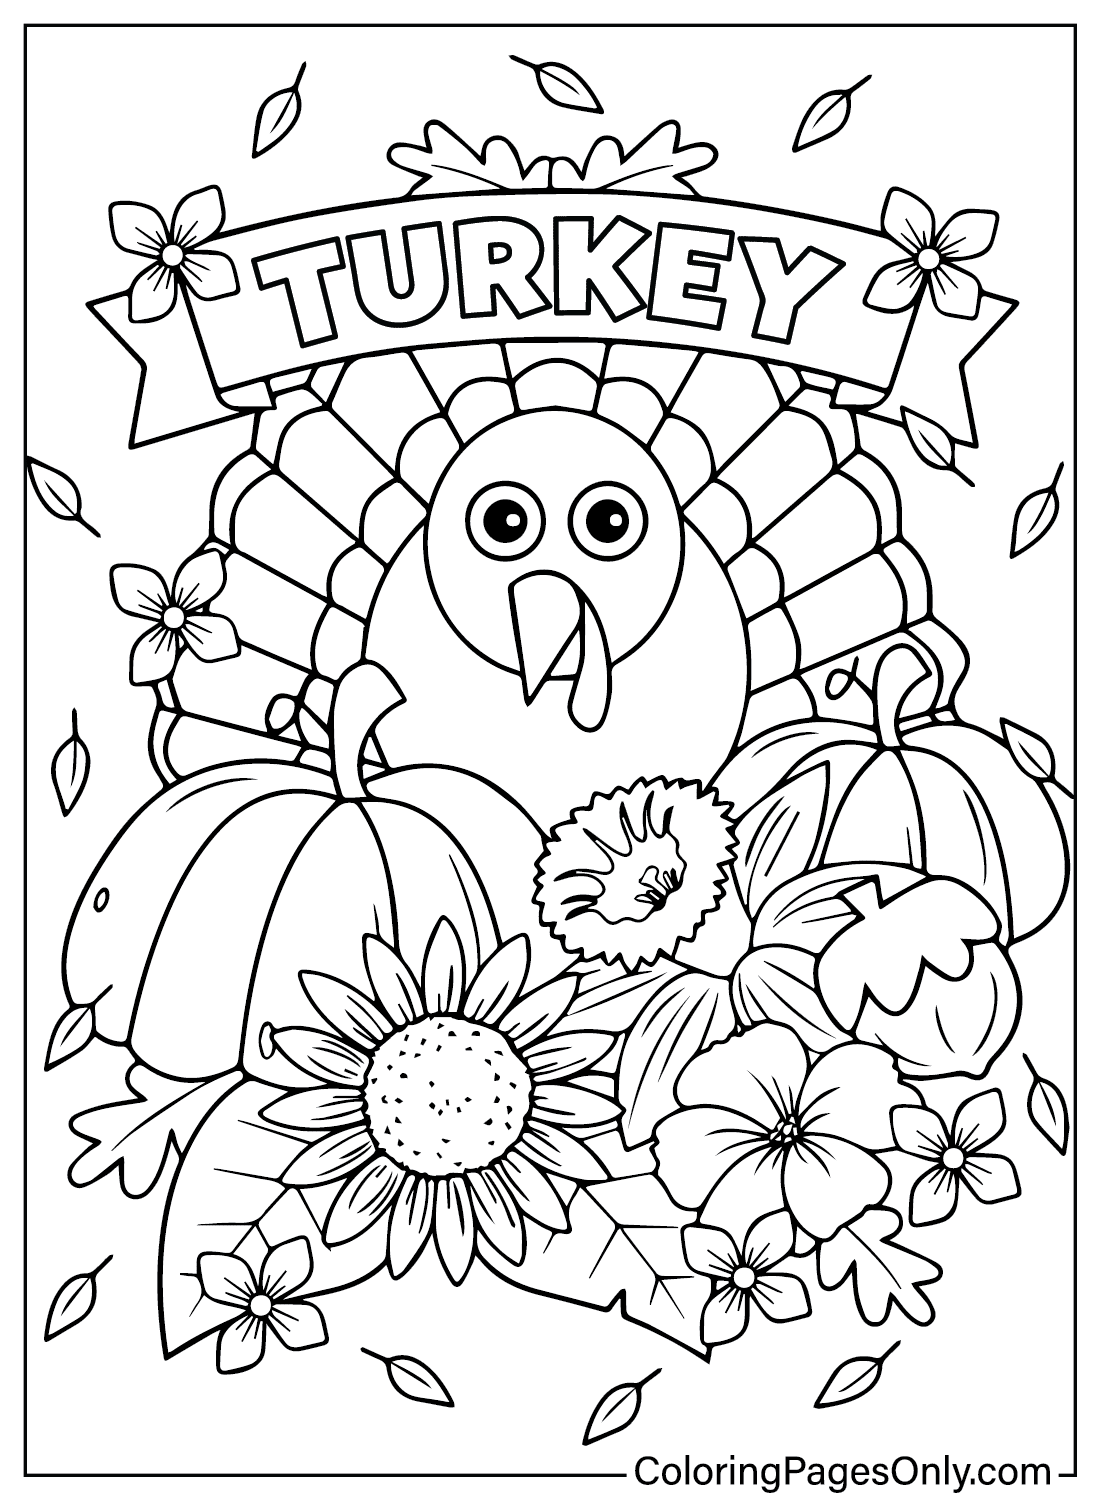 Раскраска Турция из Турции